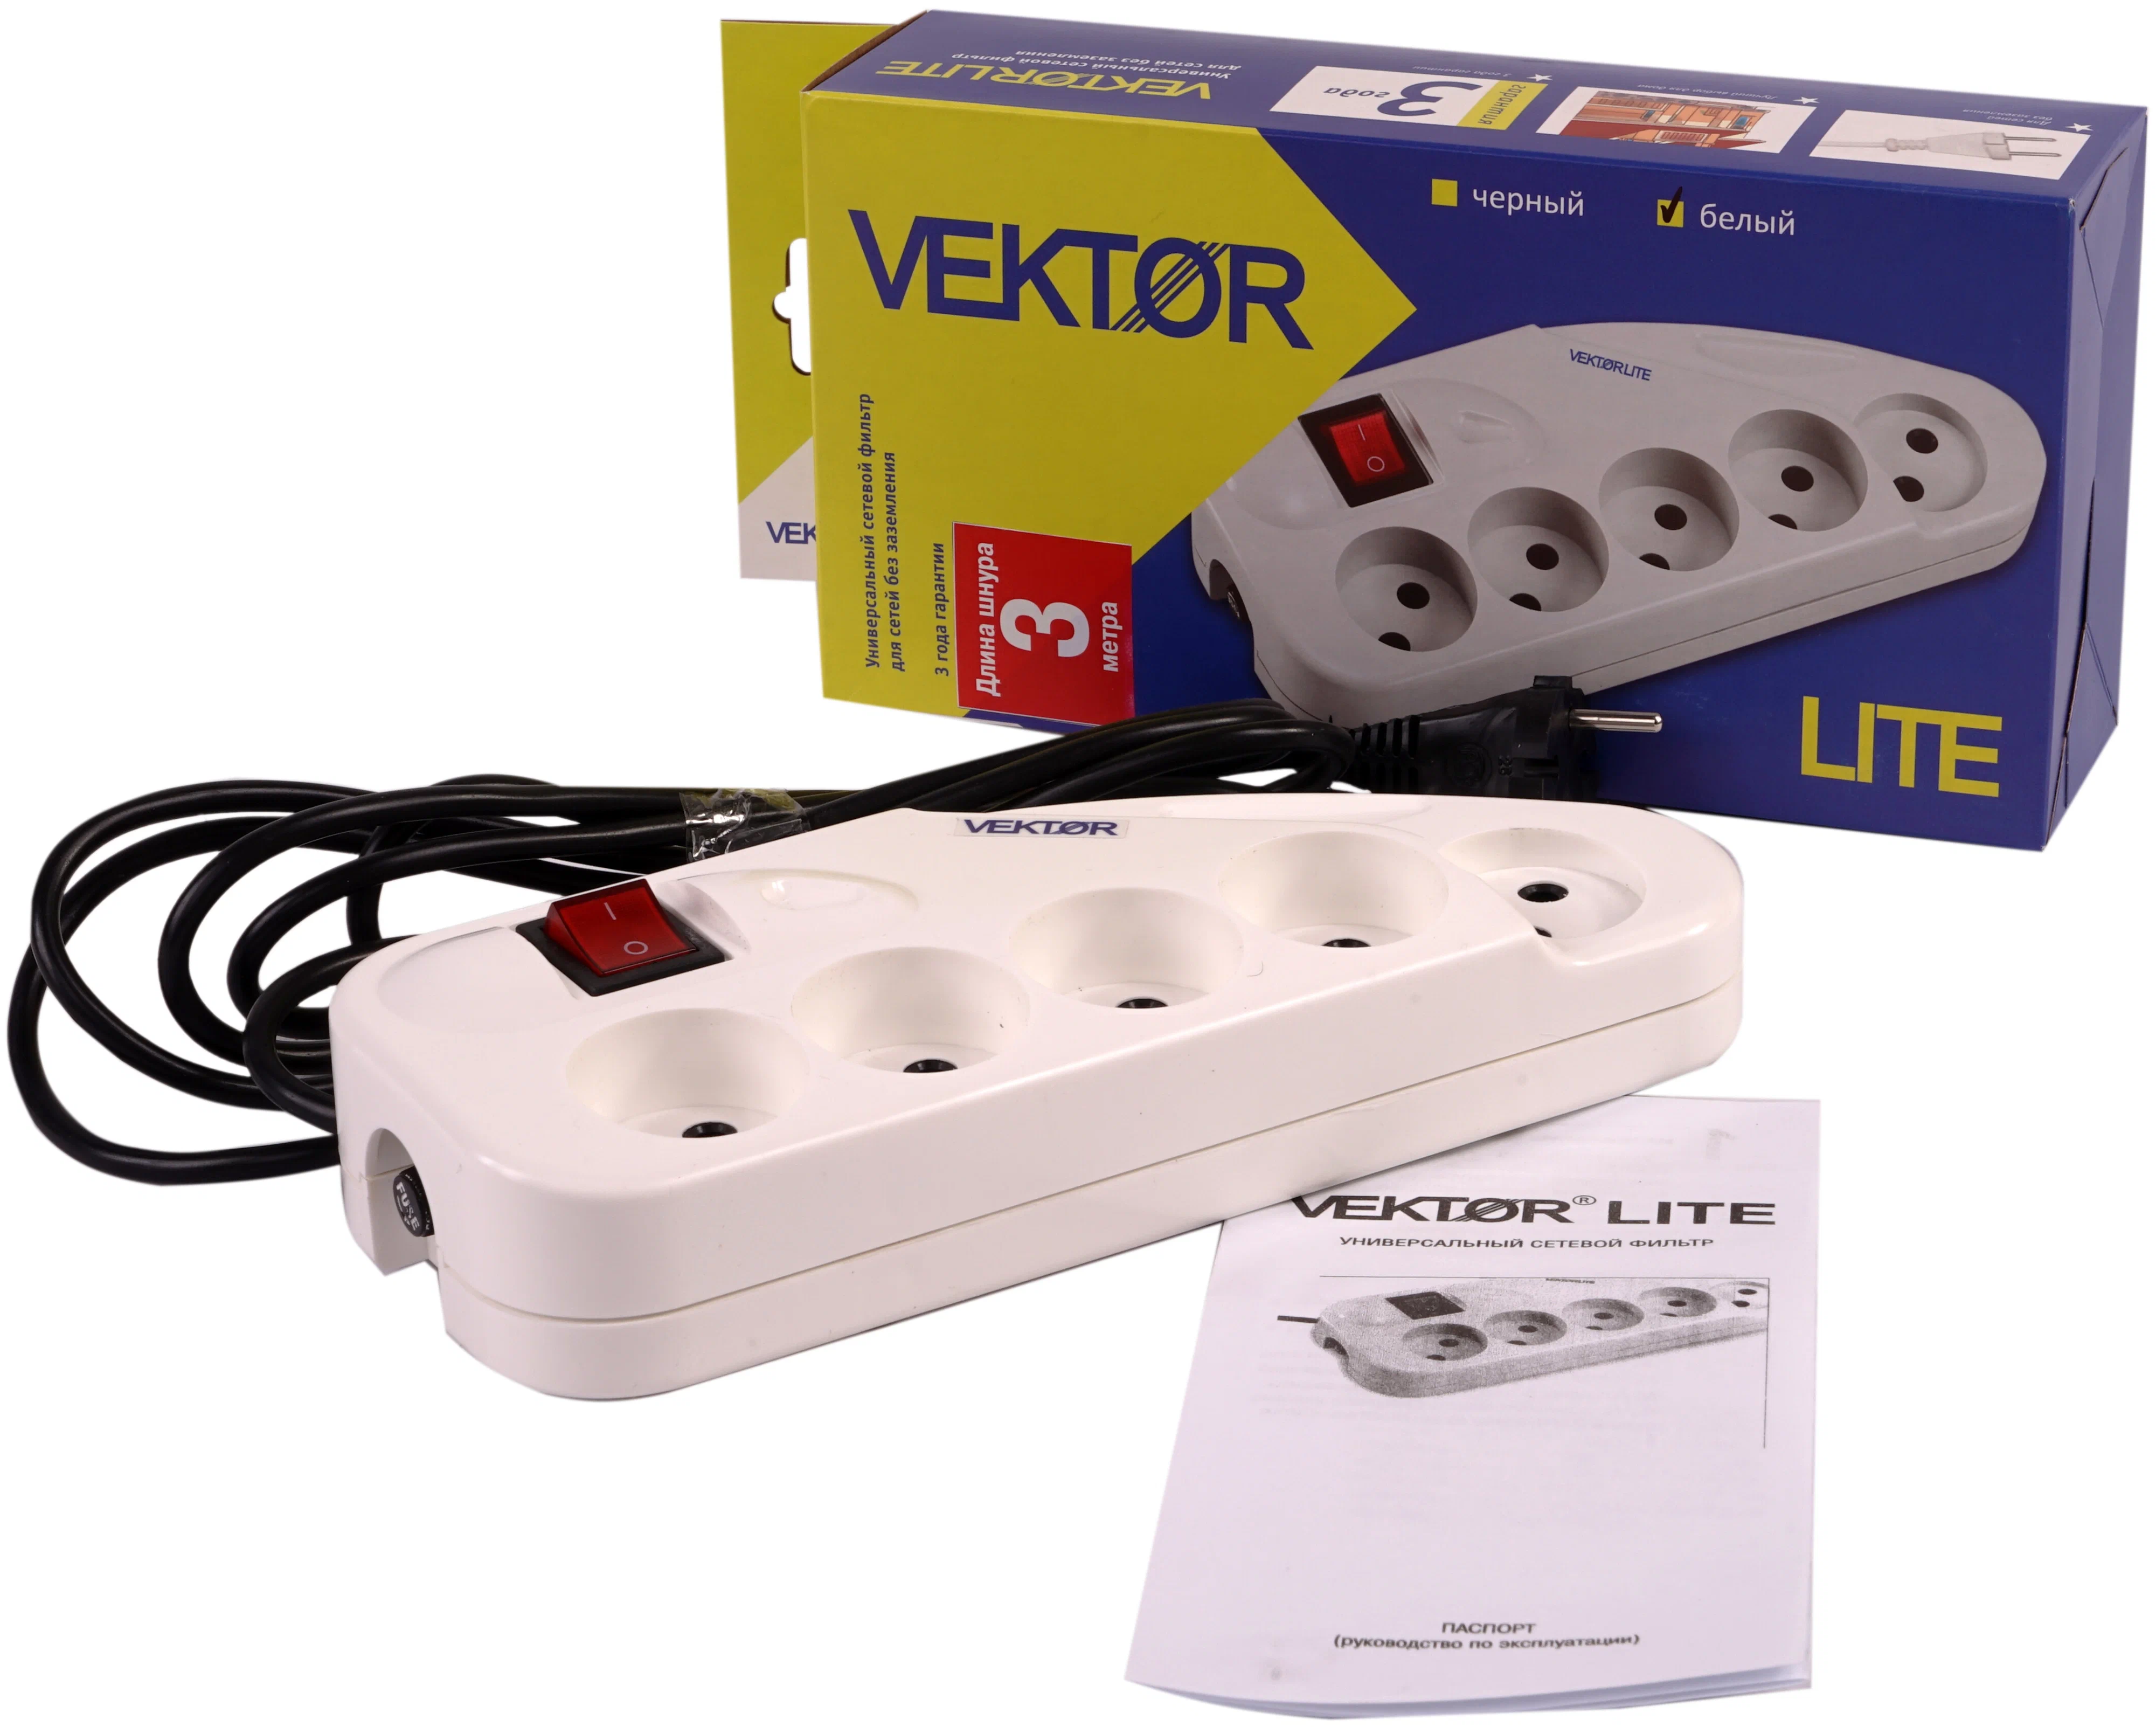 фото Vektor сетевой фильтр vektor lite 2.2квт светло-серый 3м (для бытовой техники б/з) vector